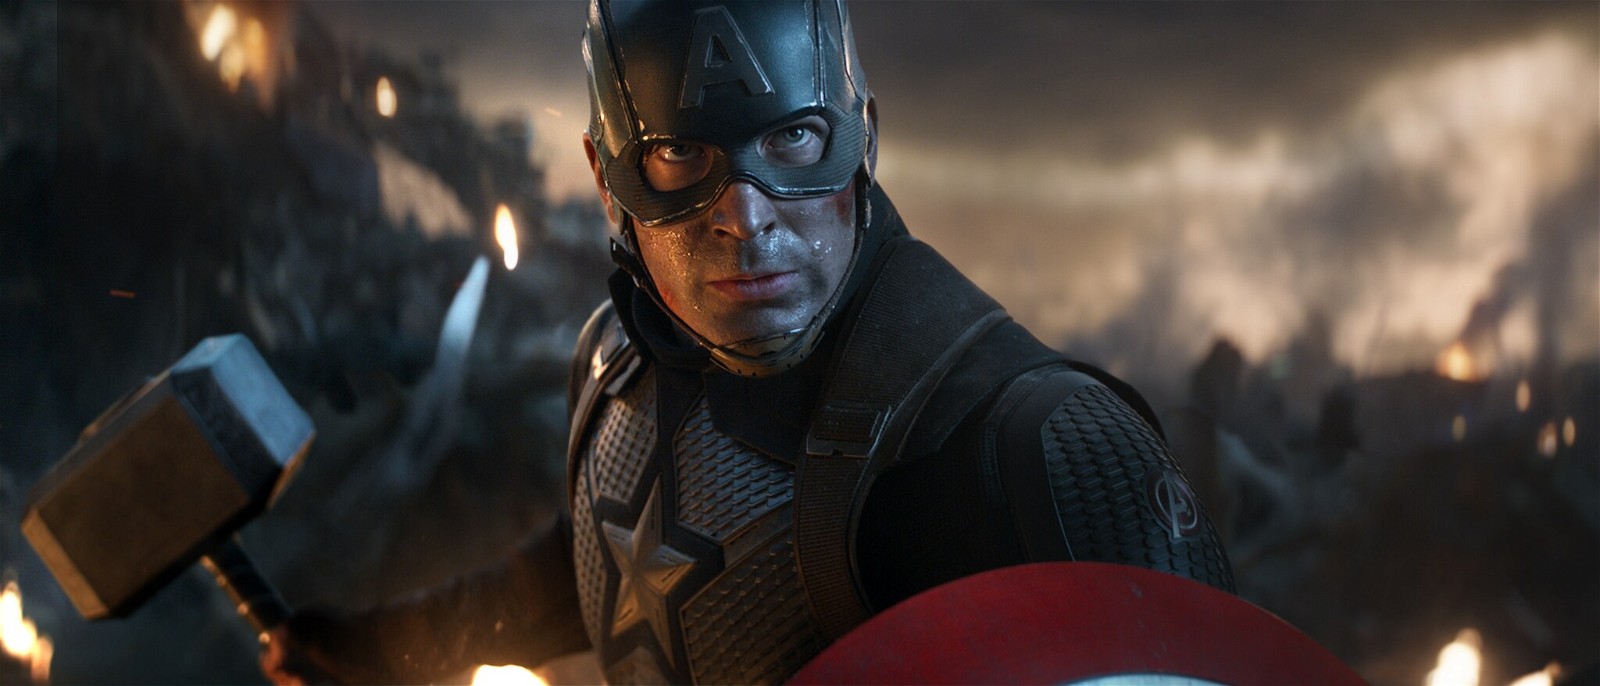 Chris Evans as Captain America lifting Mjolnir Avengers: Endgame (2019) | Marvel Entertainment